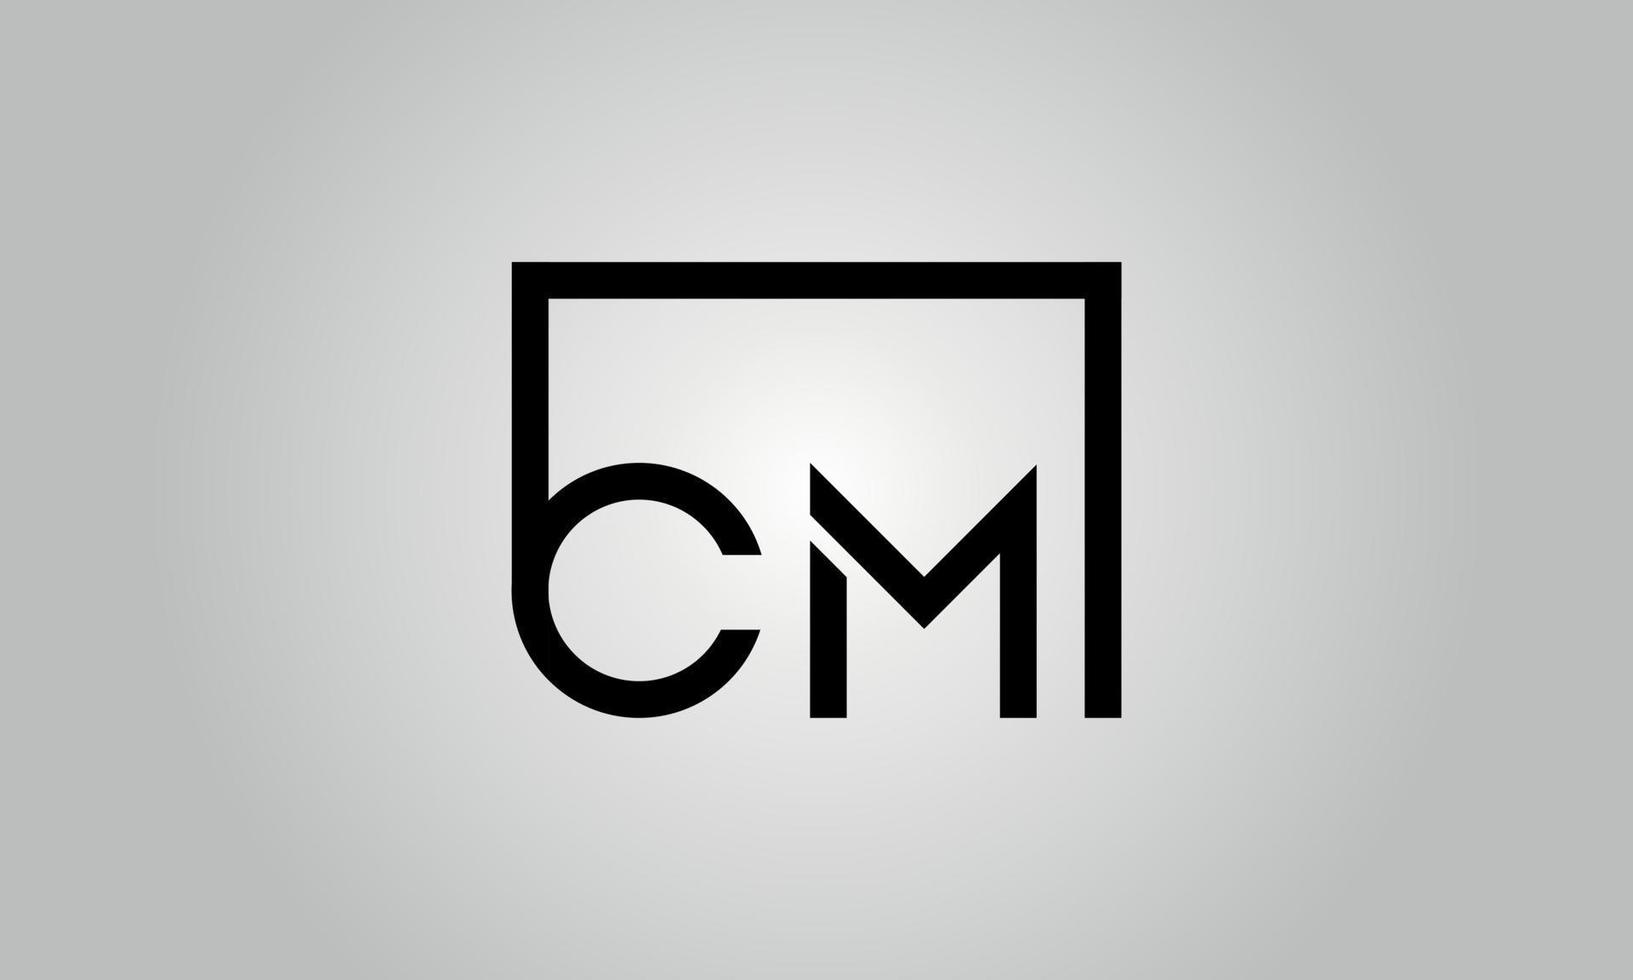 création de logo lettre cm. logo cm avec forme carrée dans le modèle vectoriel gratuit de couleurs noires.